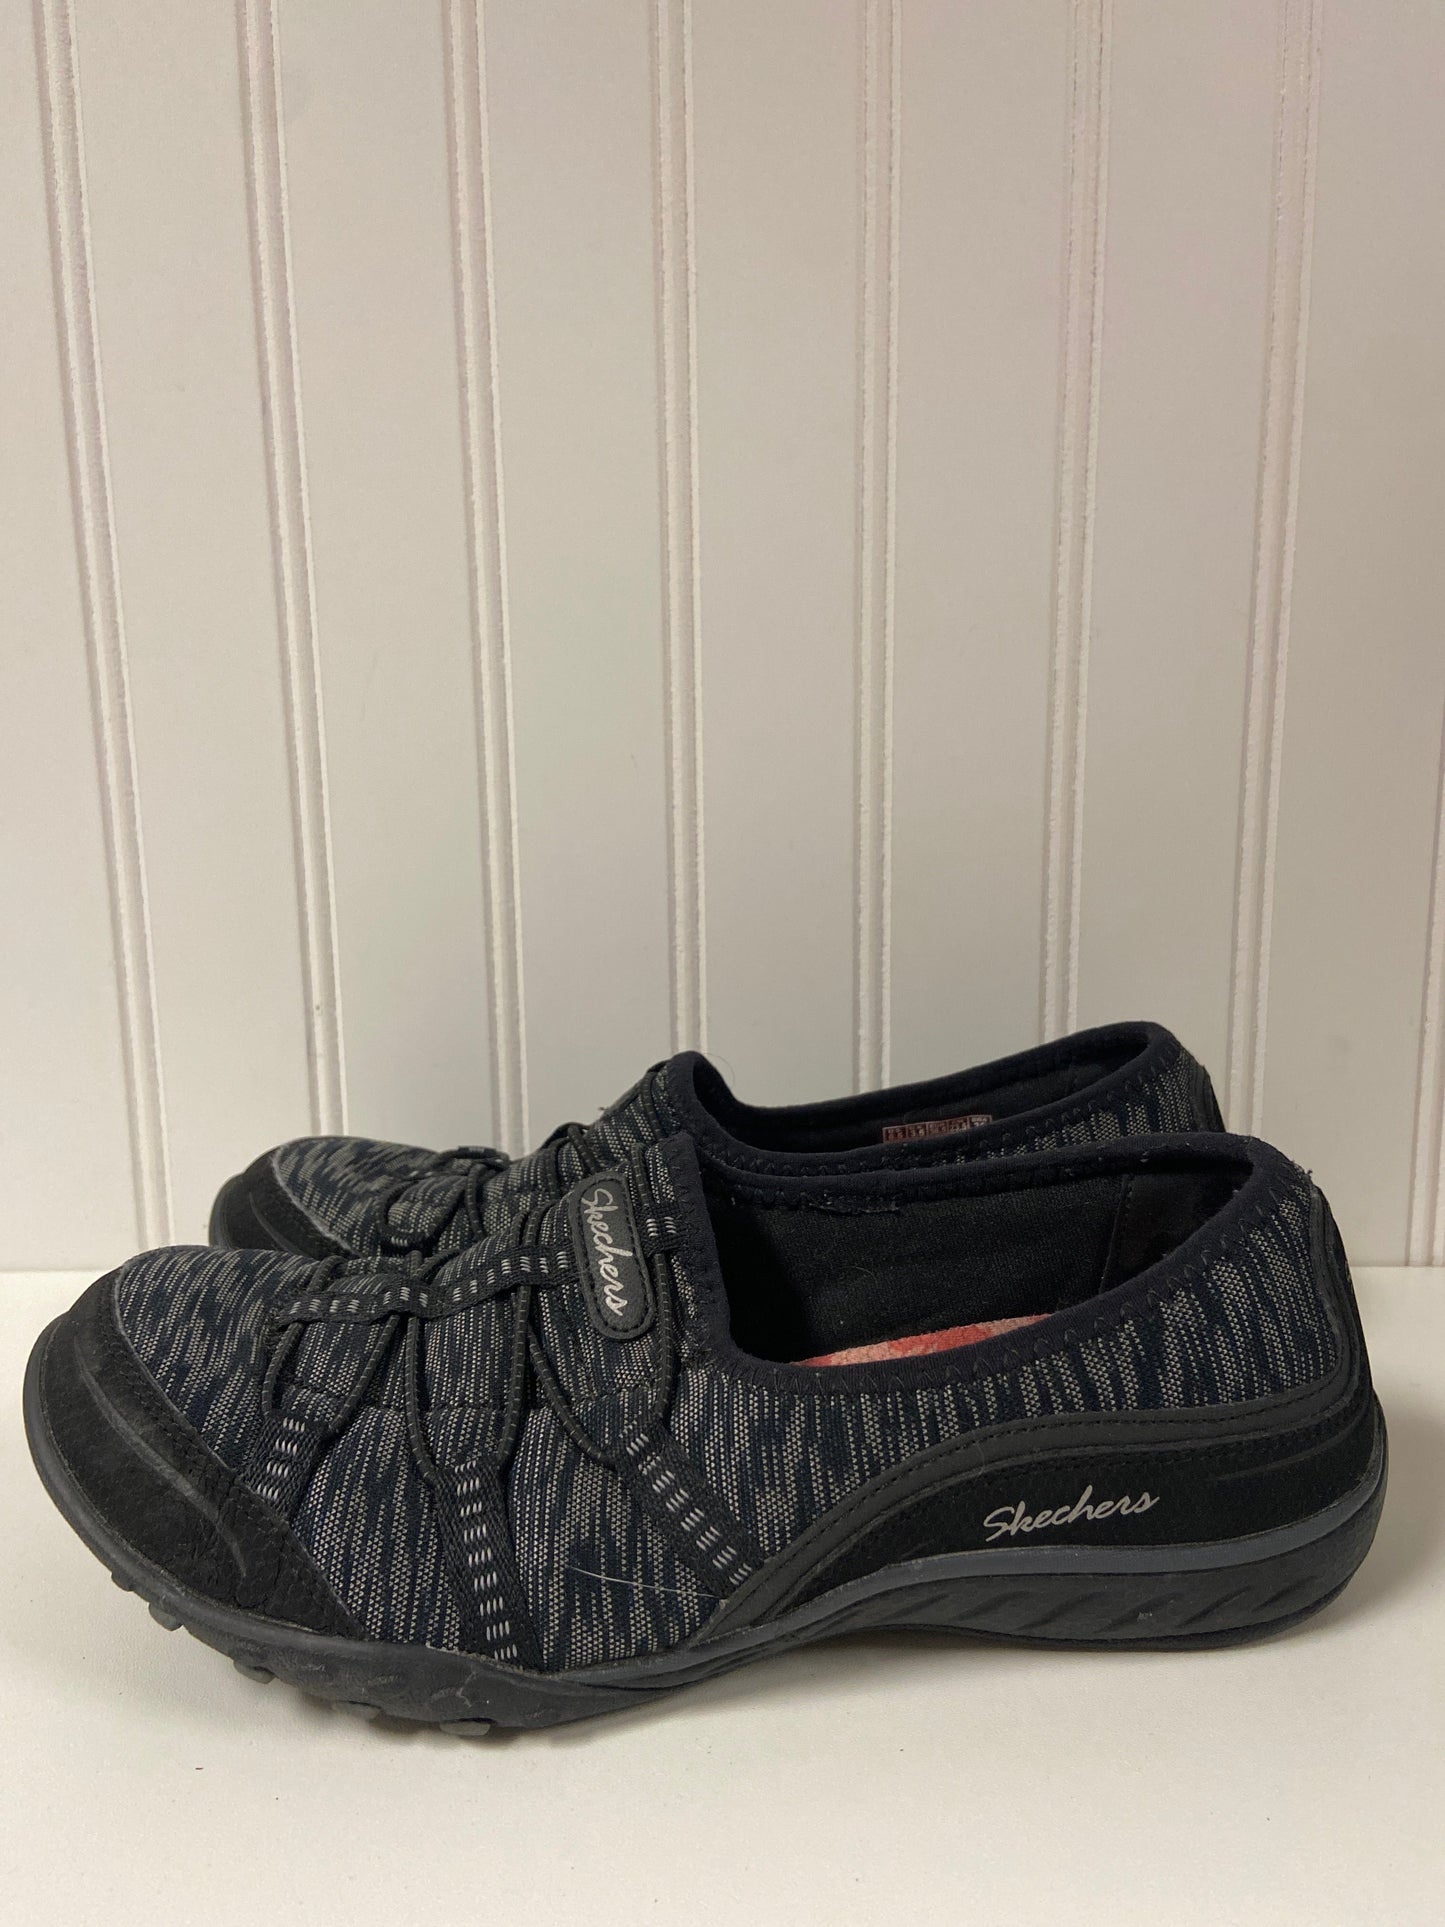 Black Shoes Flats Skechers, Size 6.5